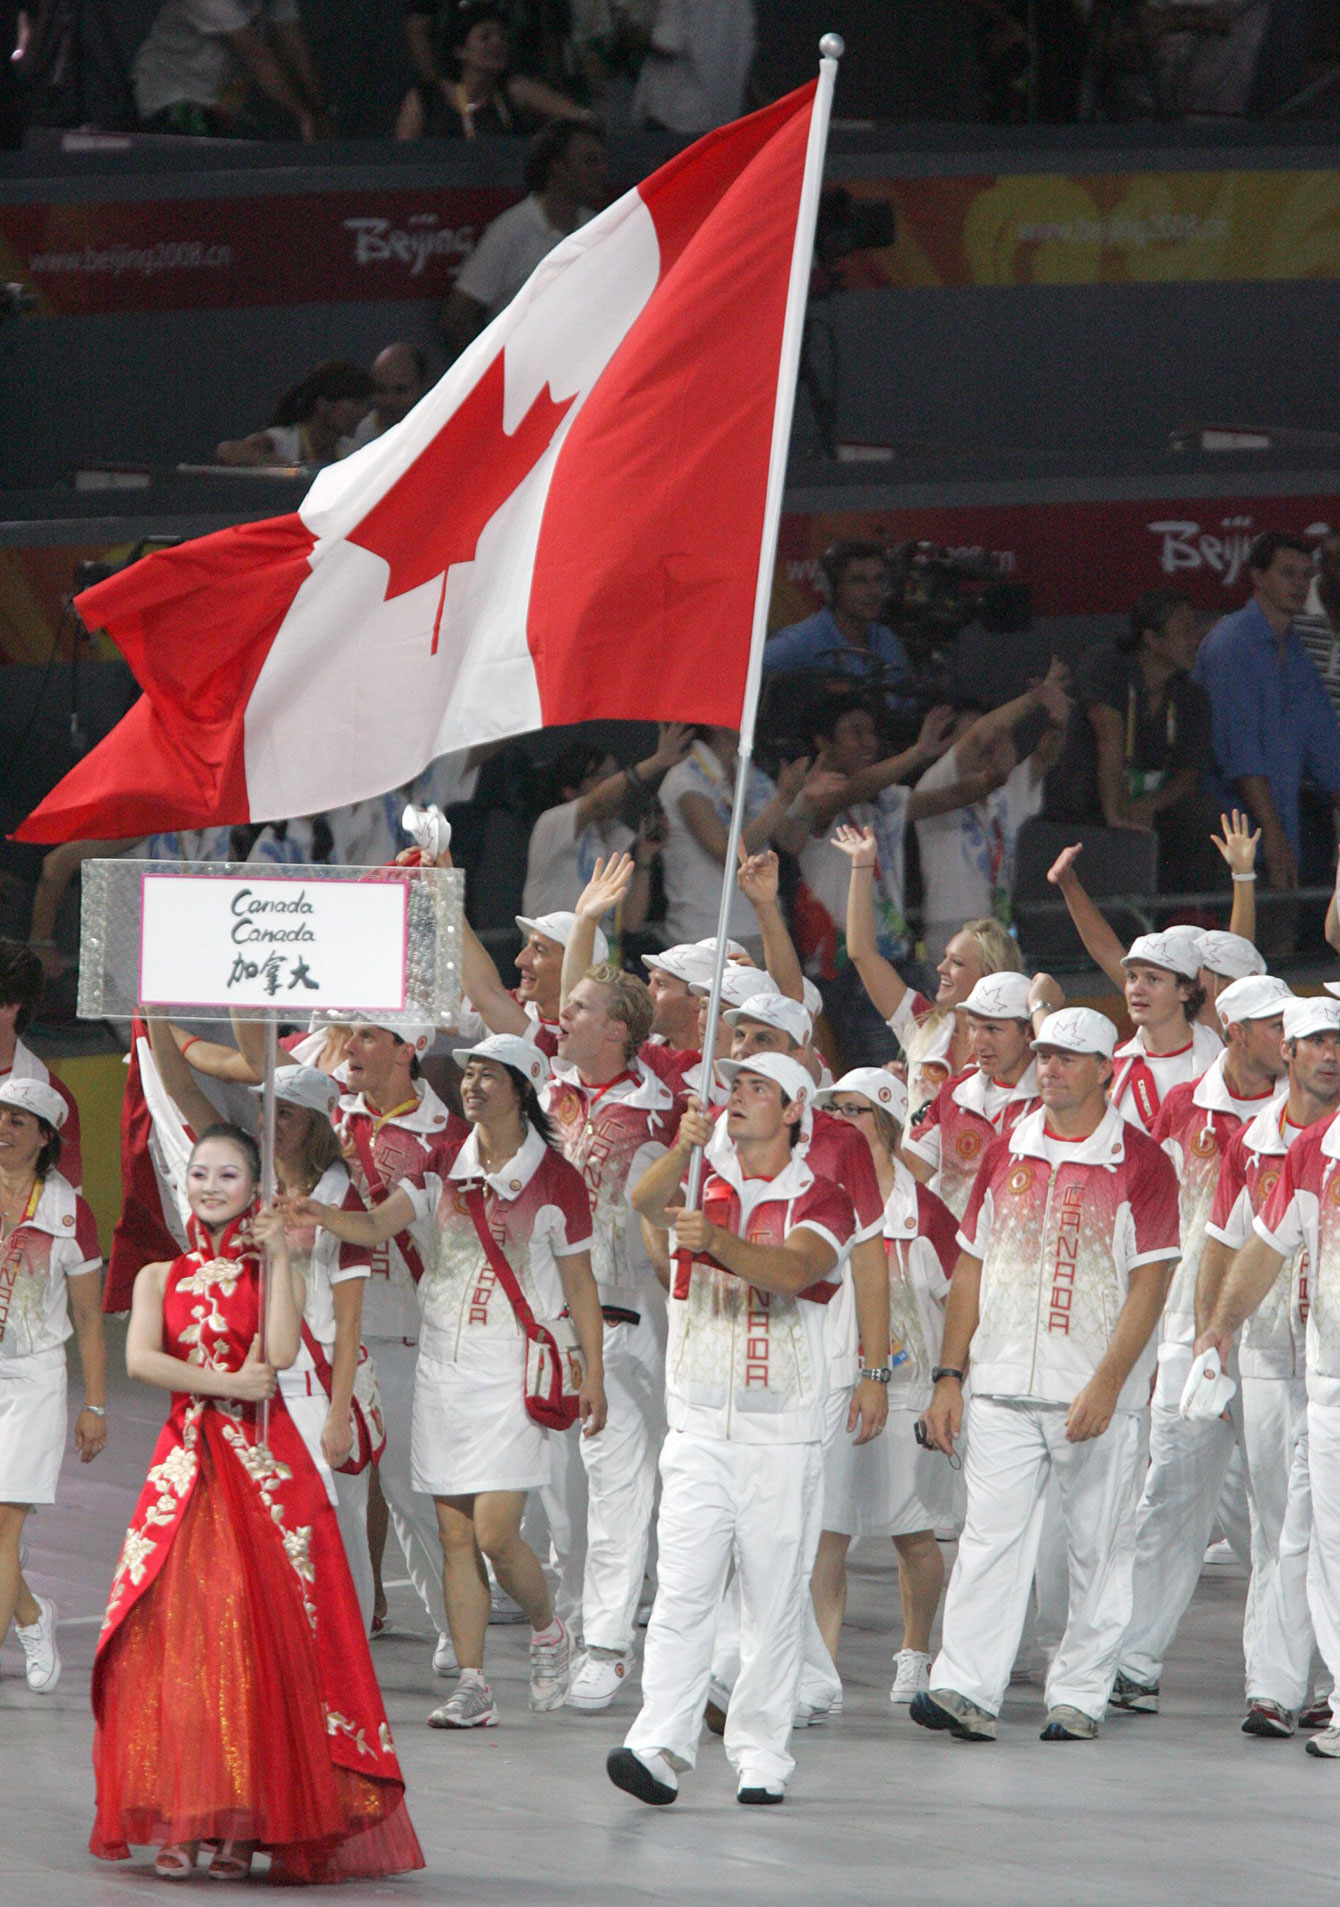 Adam van Koeverden leads Canada into the Bird's Nest at Beijing 2008 Opening Ceremony.